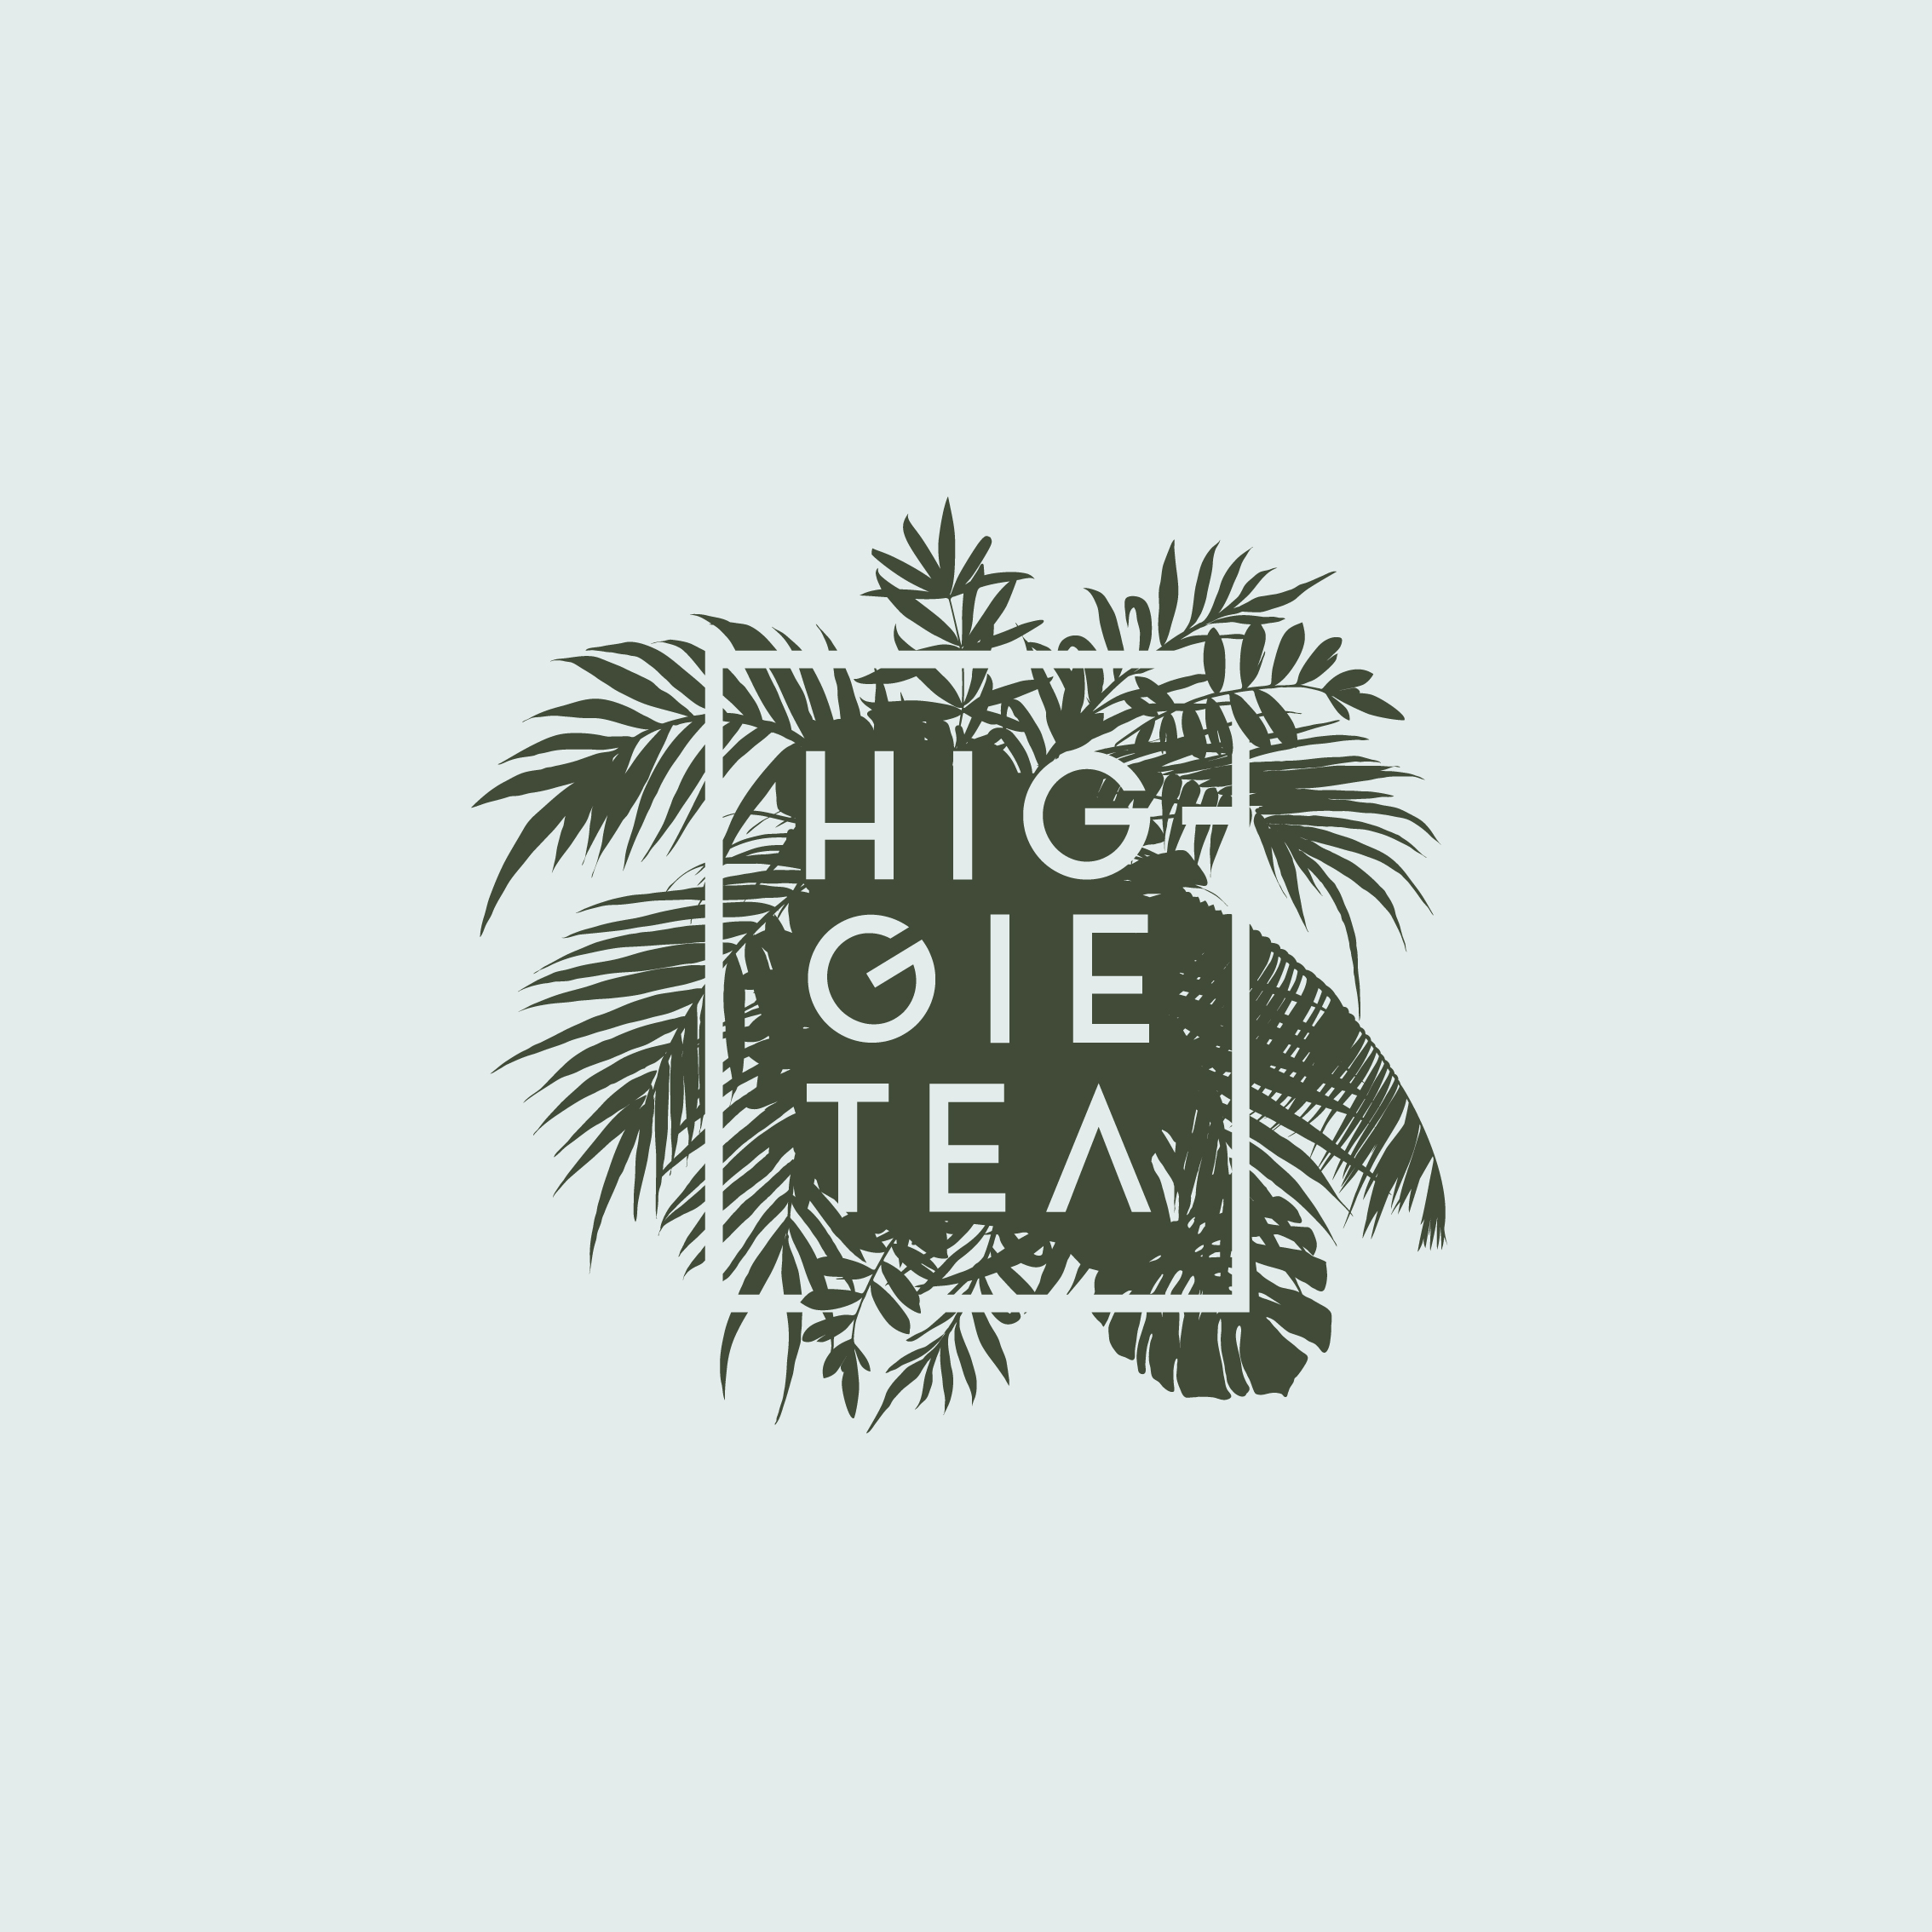 HiggieTea-logo-2